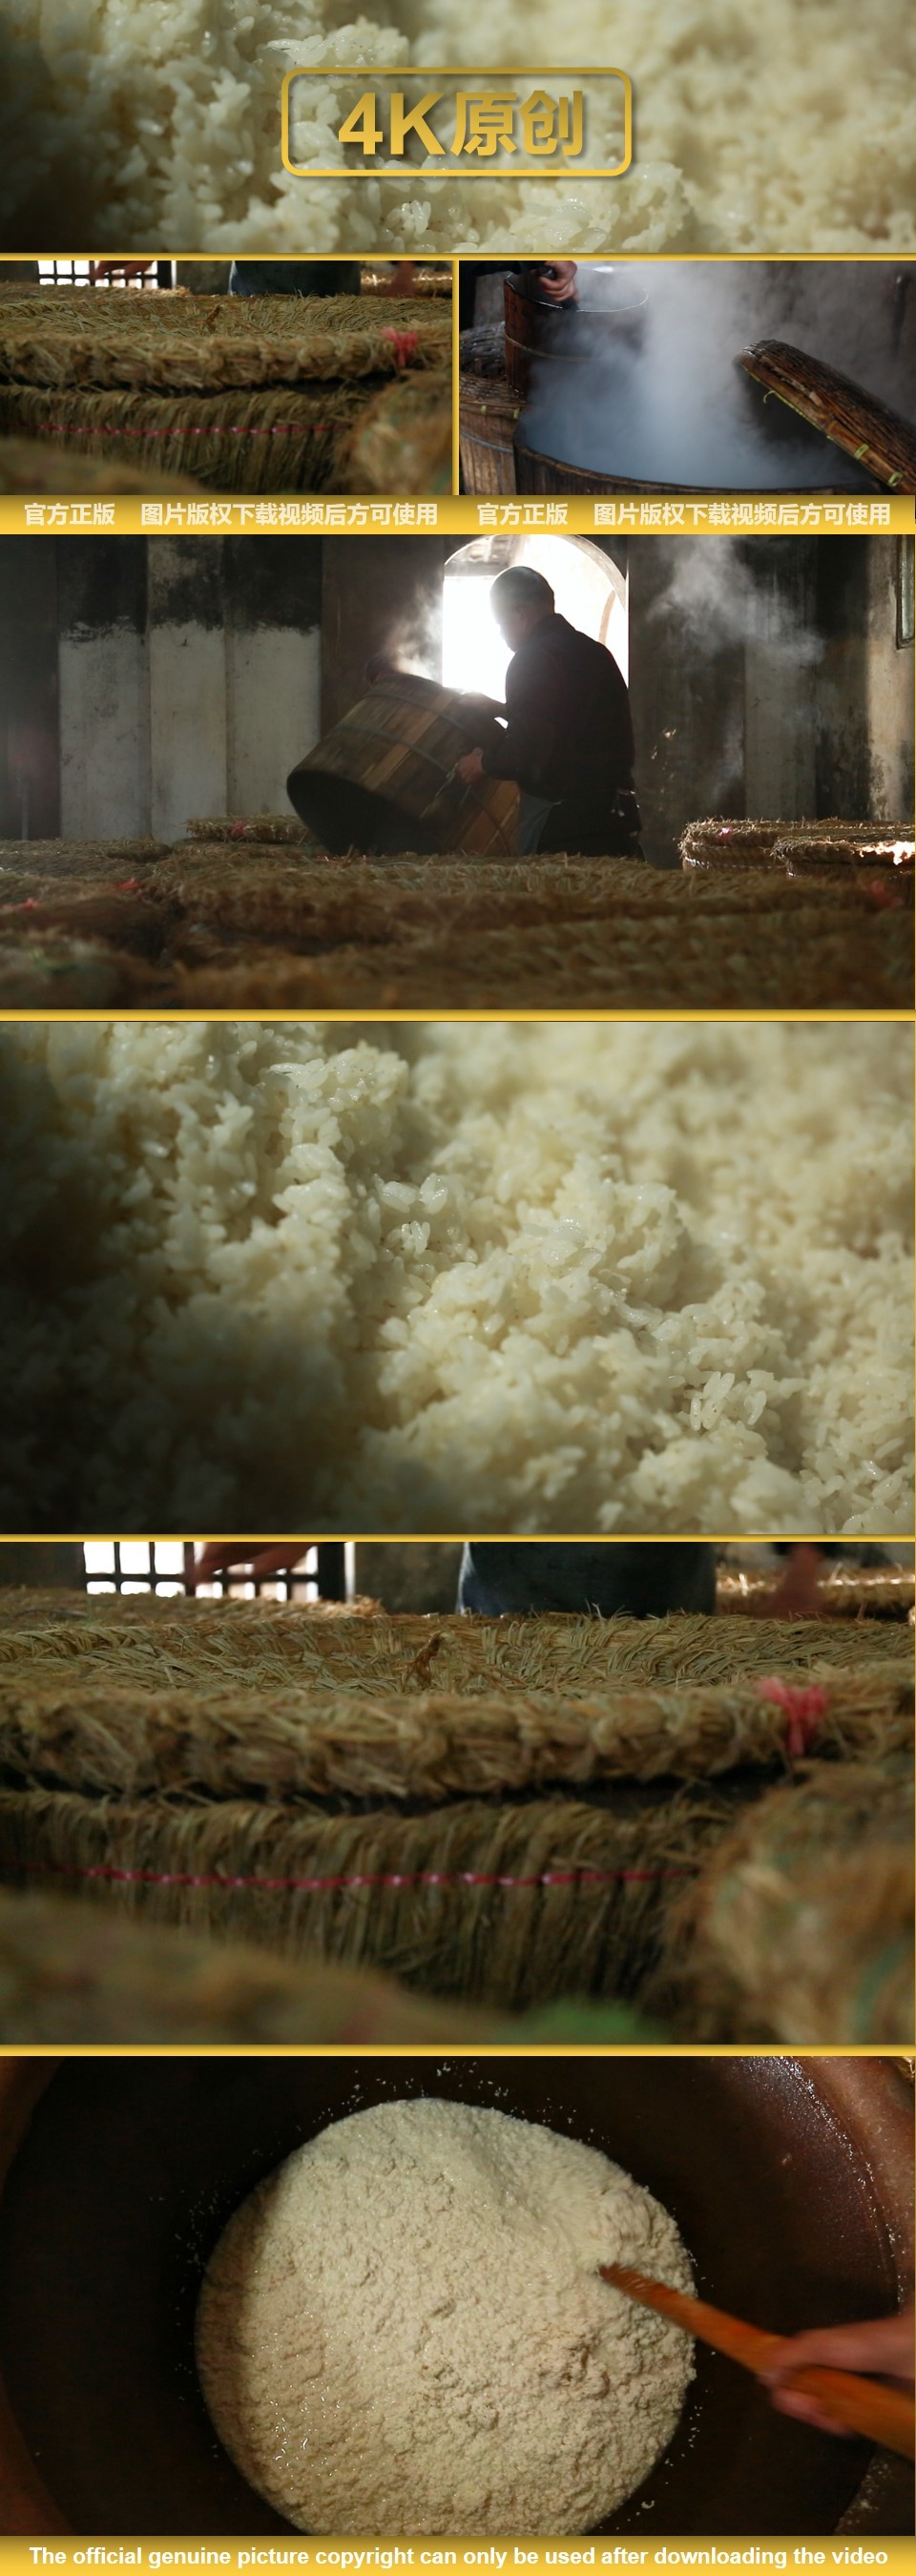 米酒酿造 酿酒 米酒工坊